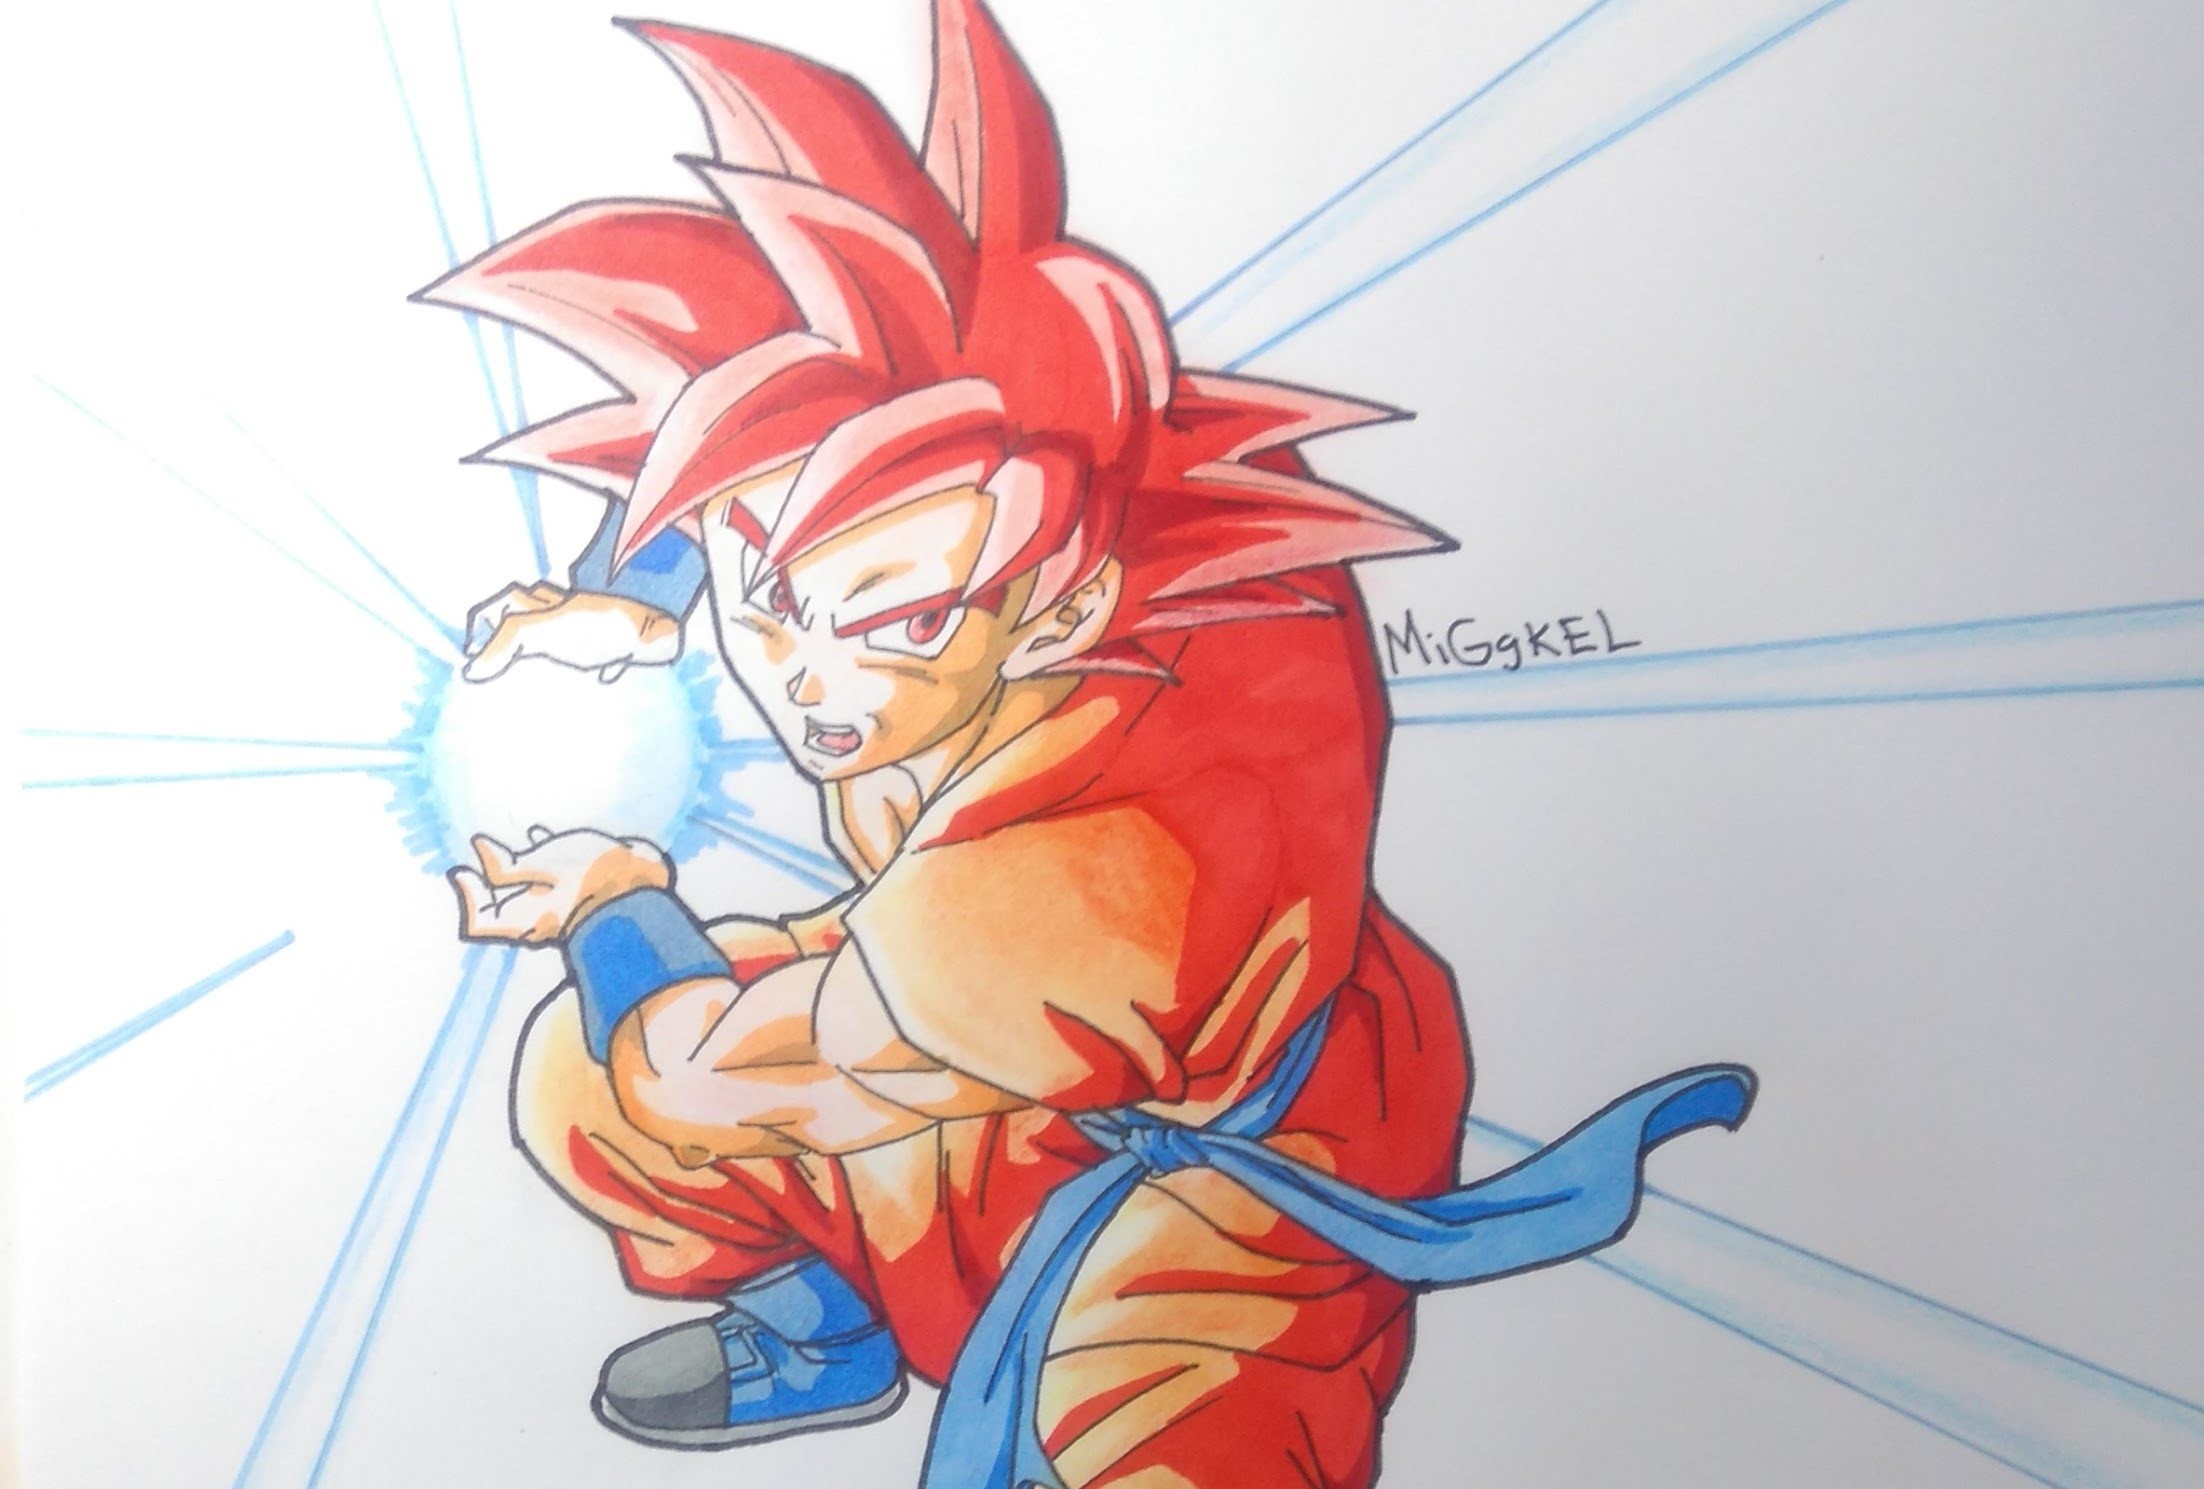 Dibujando a Goku Super saiyan god kame hame ha. Drawing Goku Super saiyan god kame hame ha